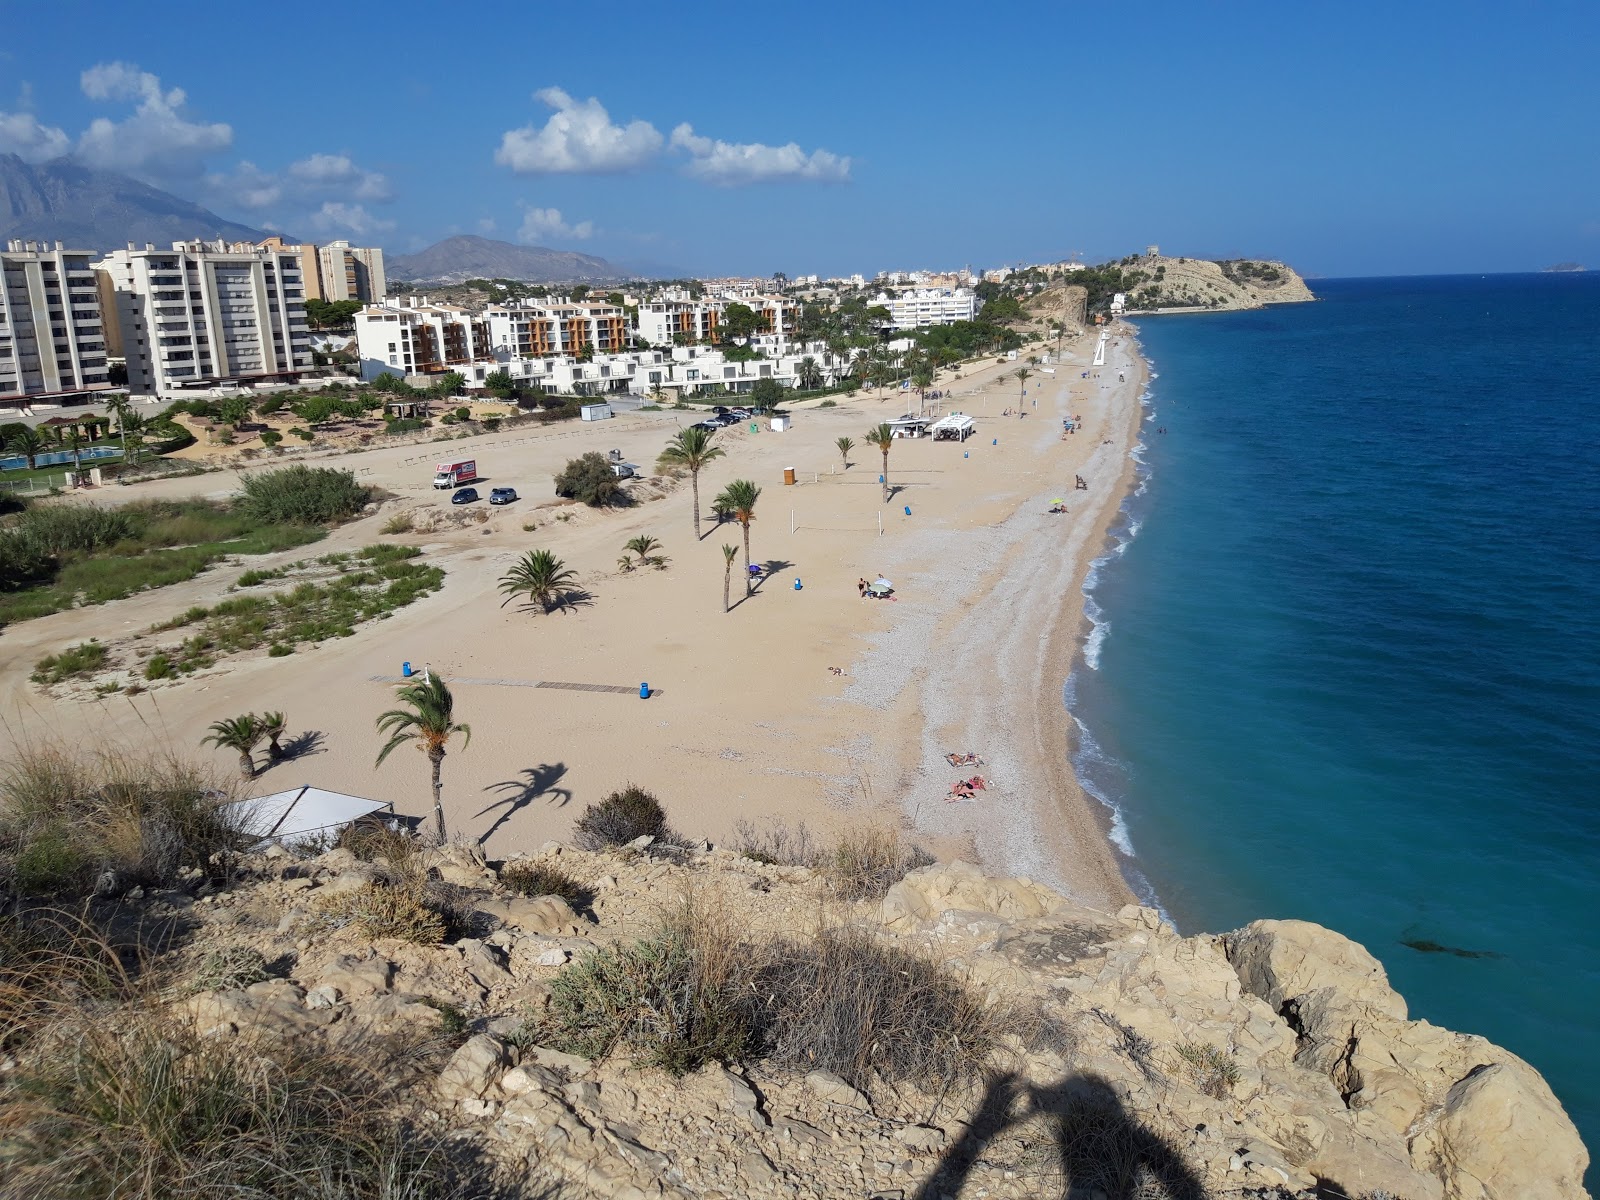 Playa el Paraiso'in fotoğrafı hafif ince çakıl taş yüzey ile